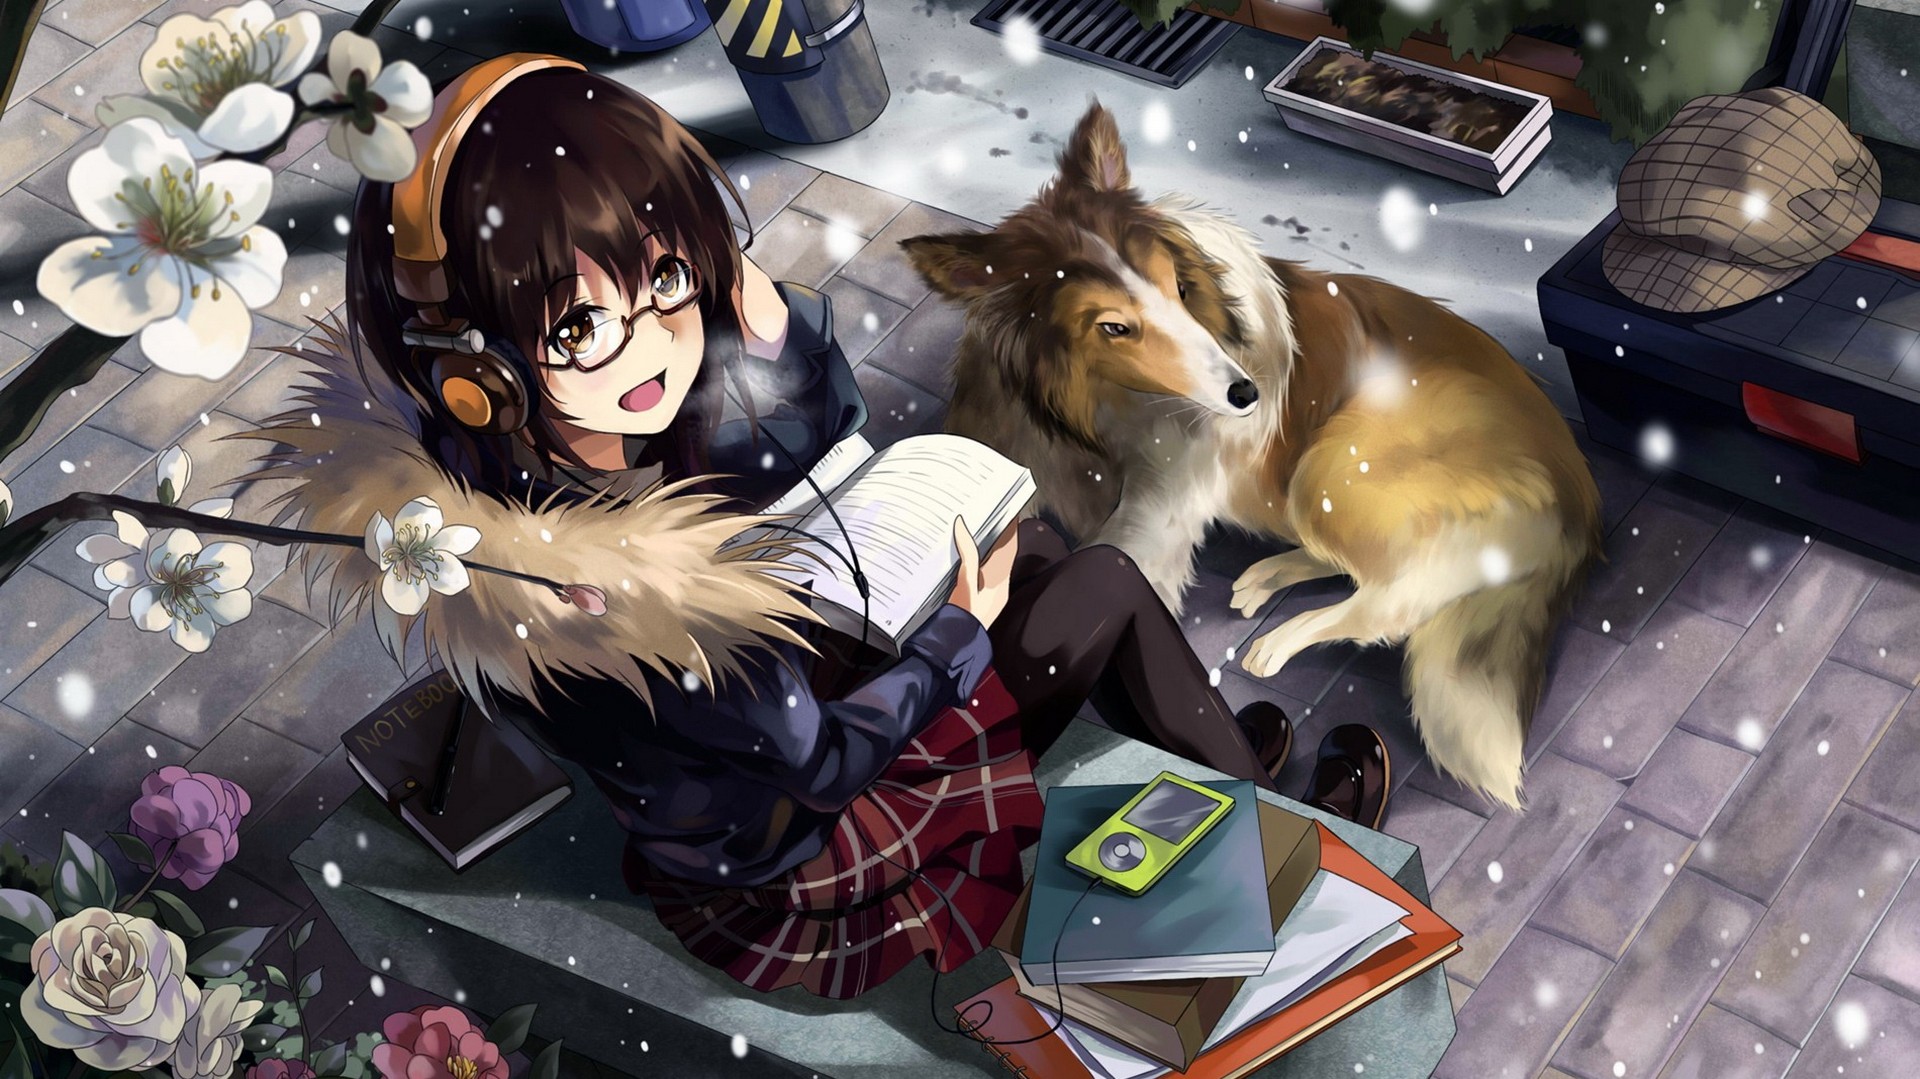 Wallpaper Anime Girl And Dog